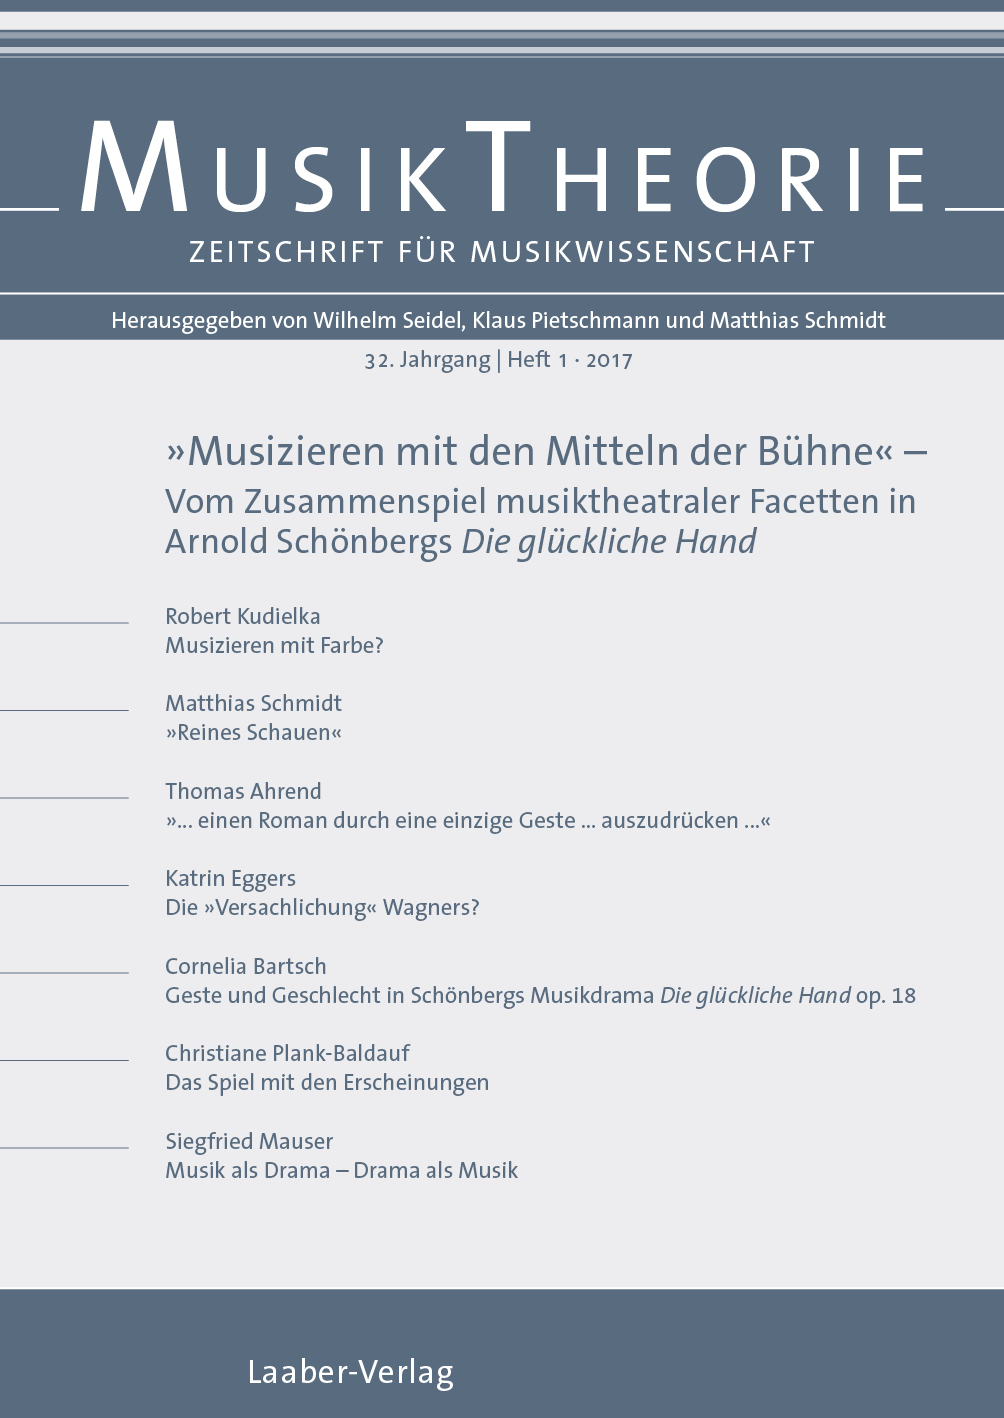 Musiktheorie Heft 1/2017